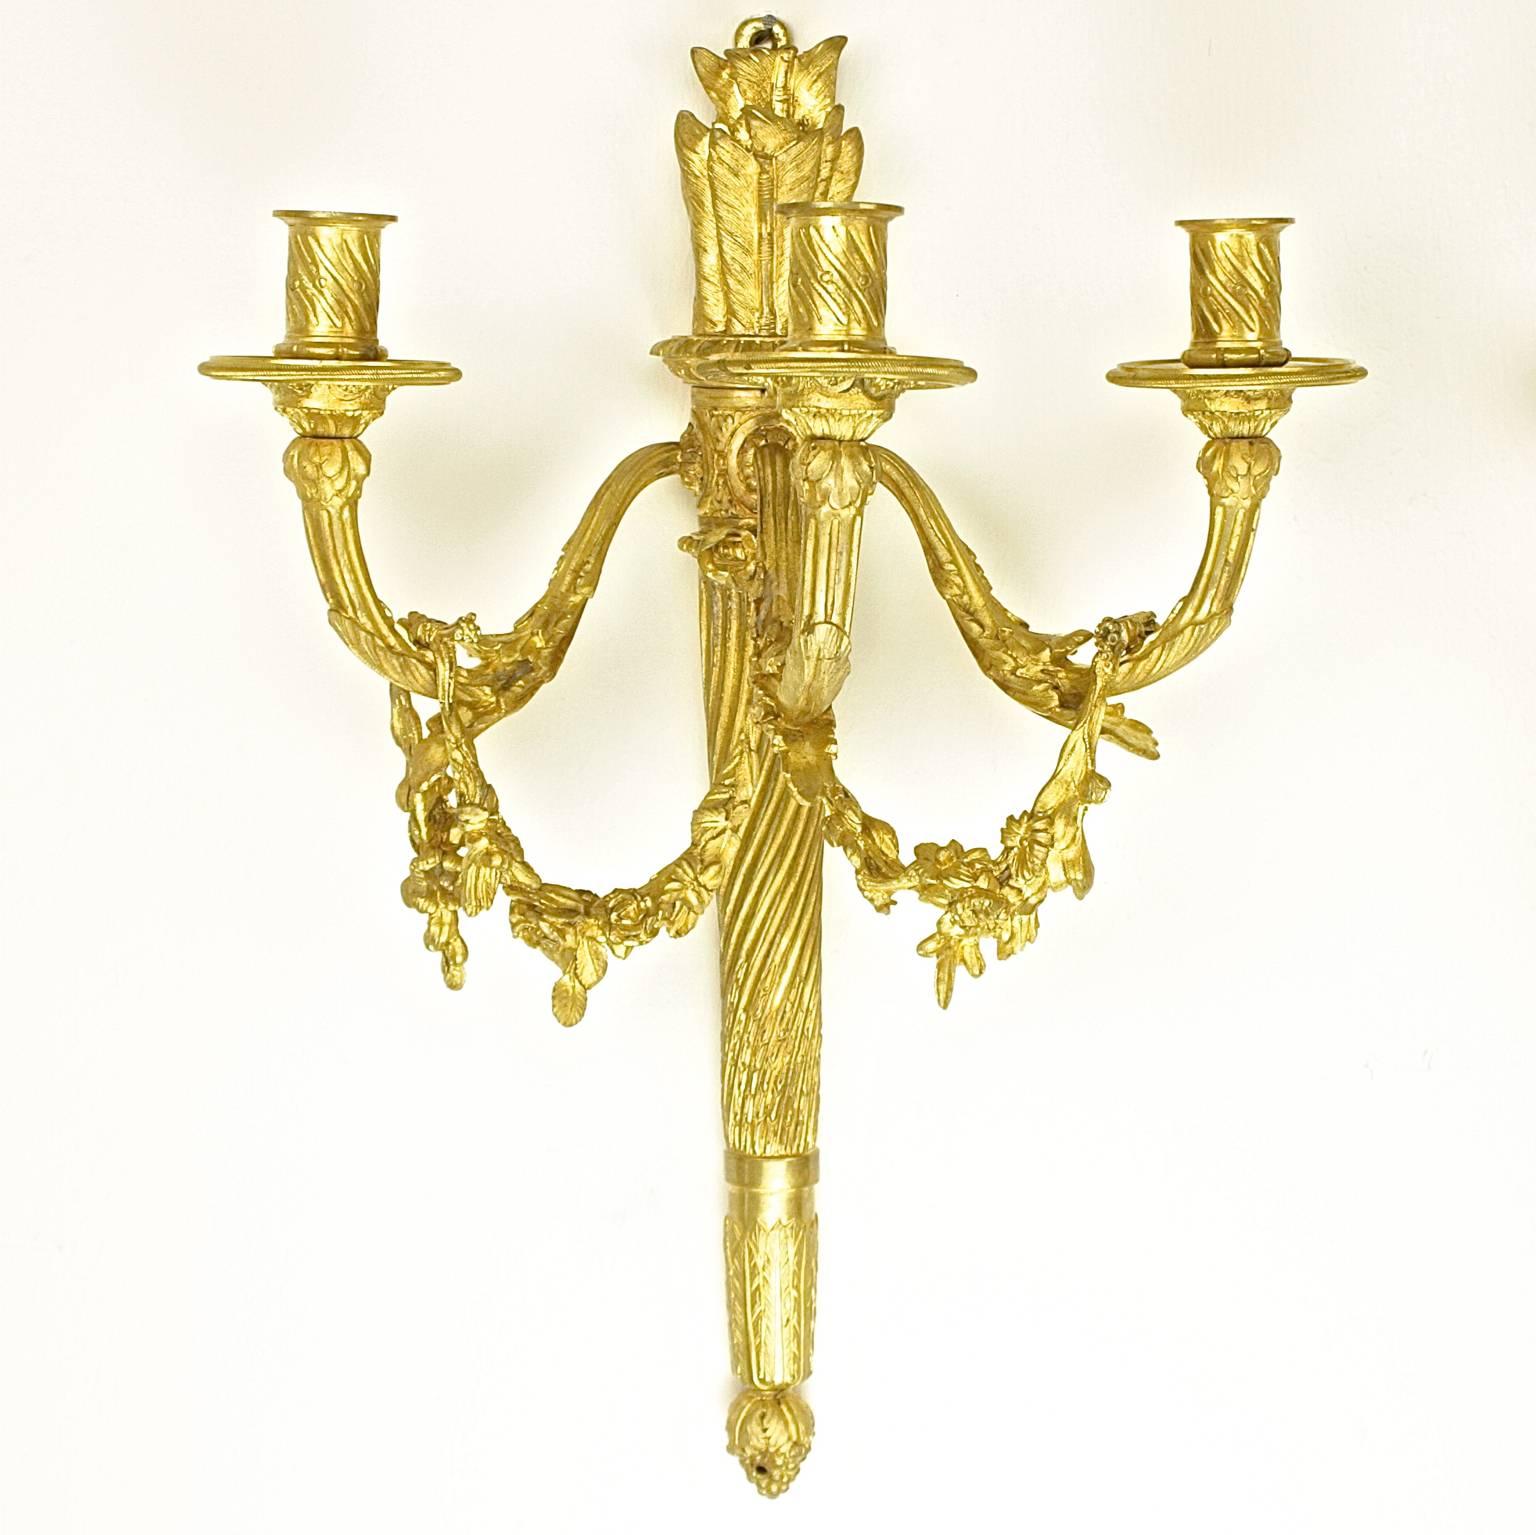 Paar dreiflammige vergoldete Bronzewandleuchter im Louis-XVI-Stil, H. Vian zugeschrieben

Ein Paar dreiflammige Wandleuchten im Louis-XVI-Stil in Köcherform, die jeweils drei Arme von einer fein ziselierten Rückwand aus haben, die eine verdrehte